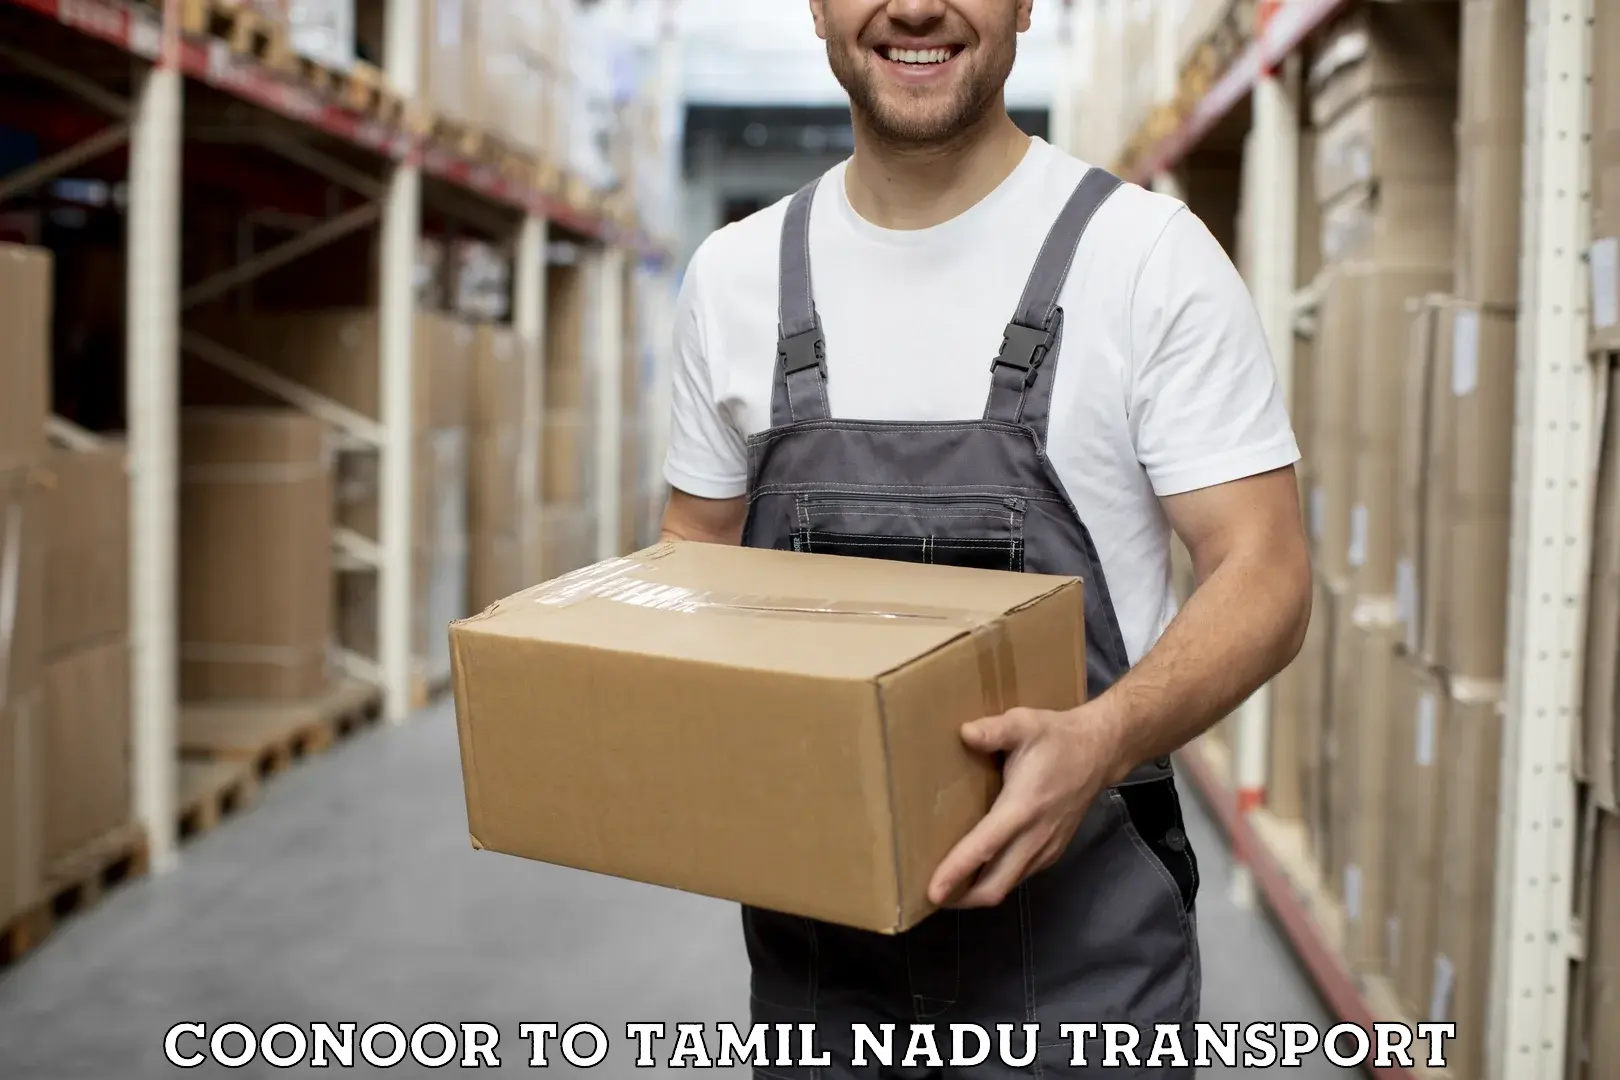 Delivery service Coonoor to Vandavasi